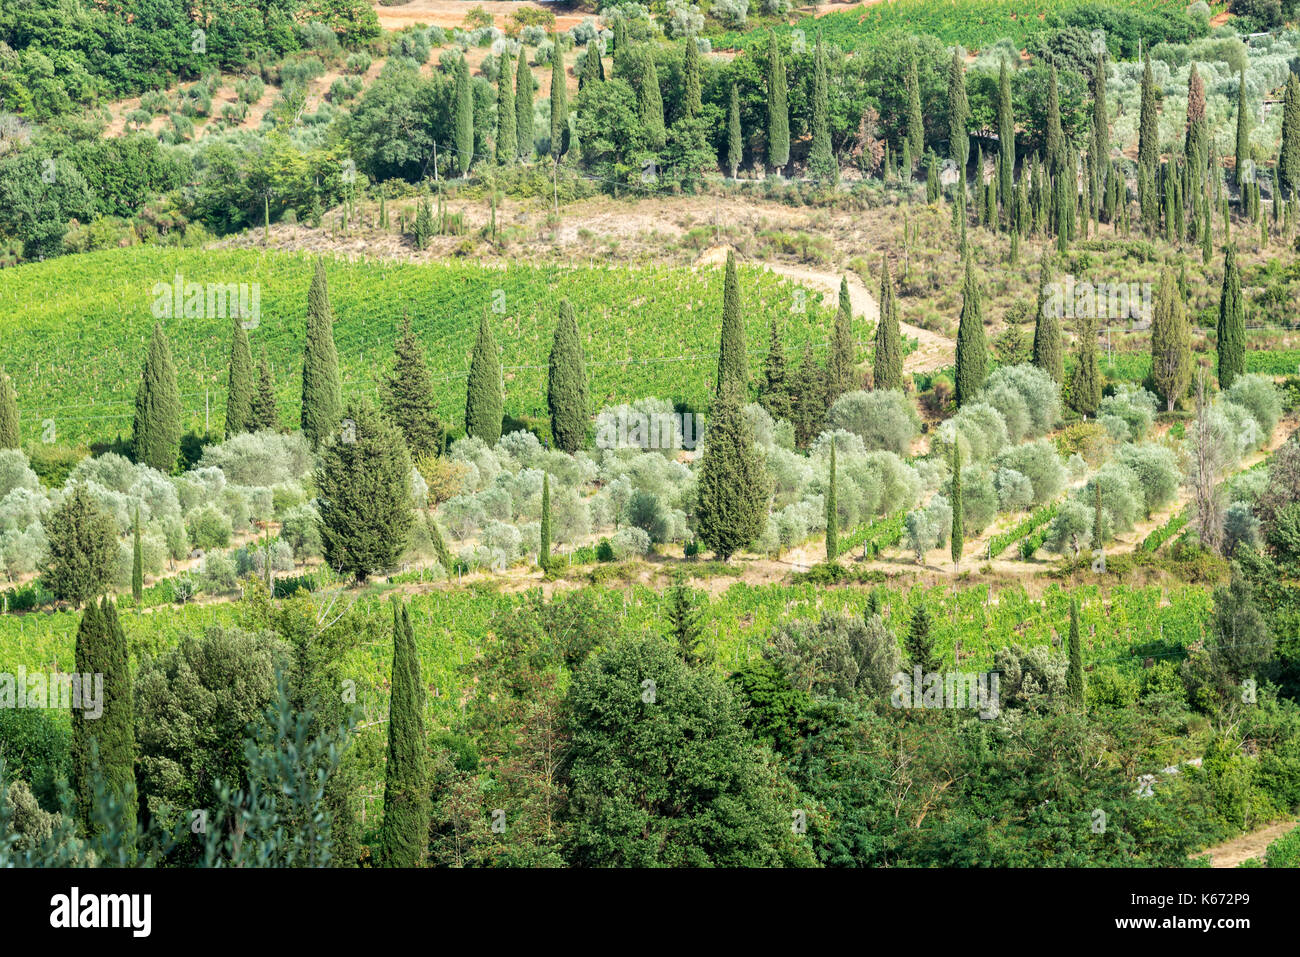 Green landscape of vineyard and cypress trees near Montalcino, Tuscany, Italy Stock Photo